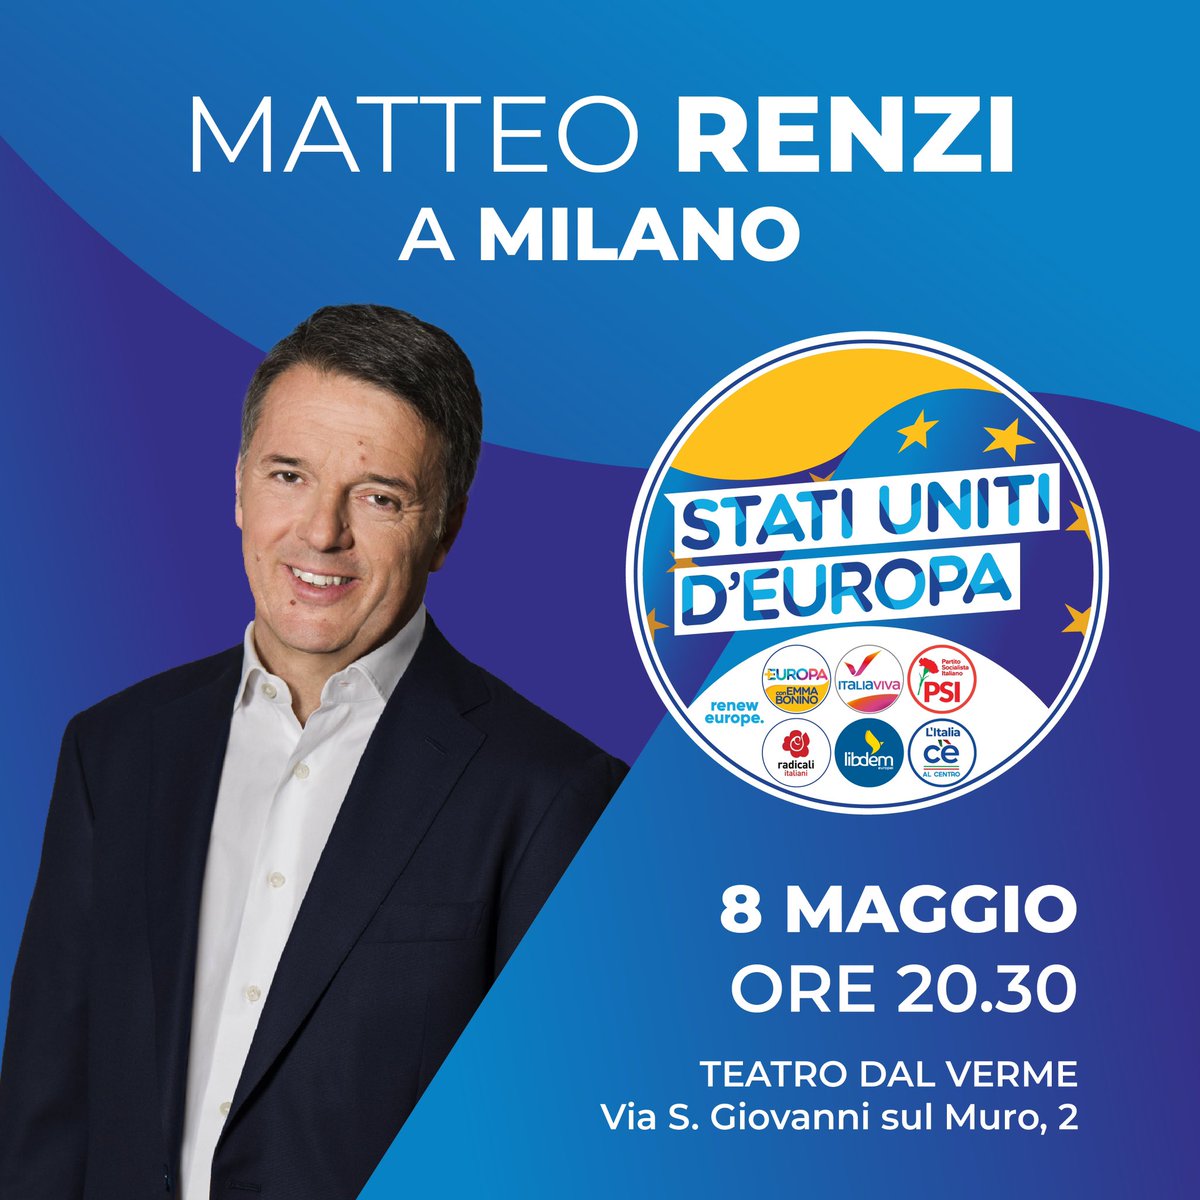 Ci vediamo al Teatro dal Verme a Milano con @matteorenzi mercoledì 8 maggio alle 20:30! Registrati cliccando sul link
👉🏻 matteorenzi.it/prenotazione_e…